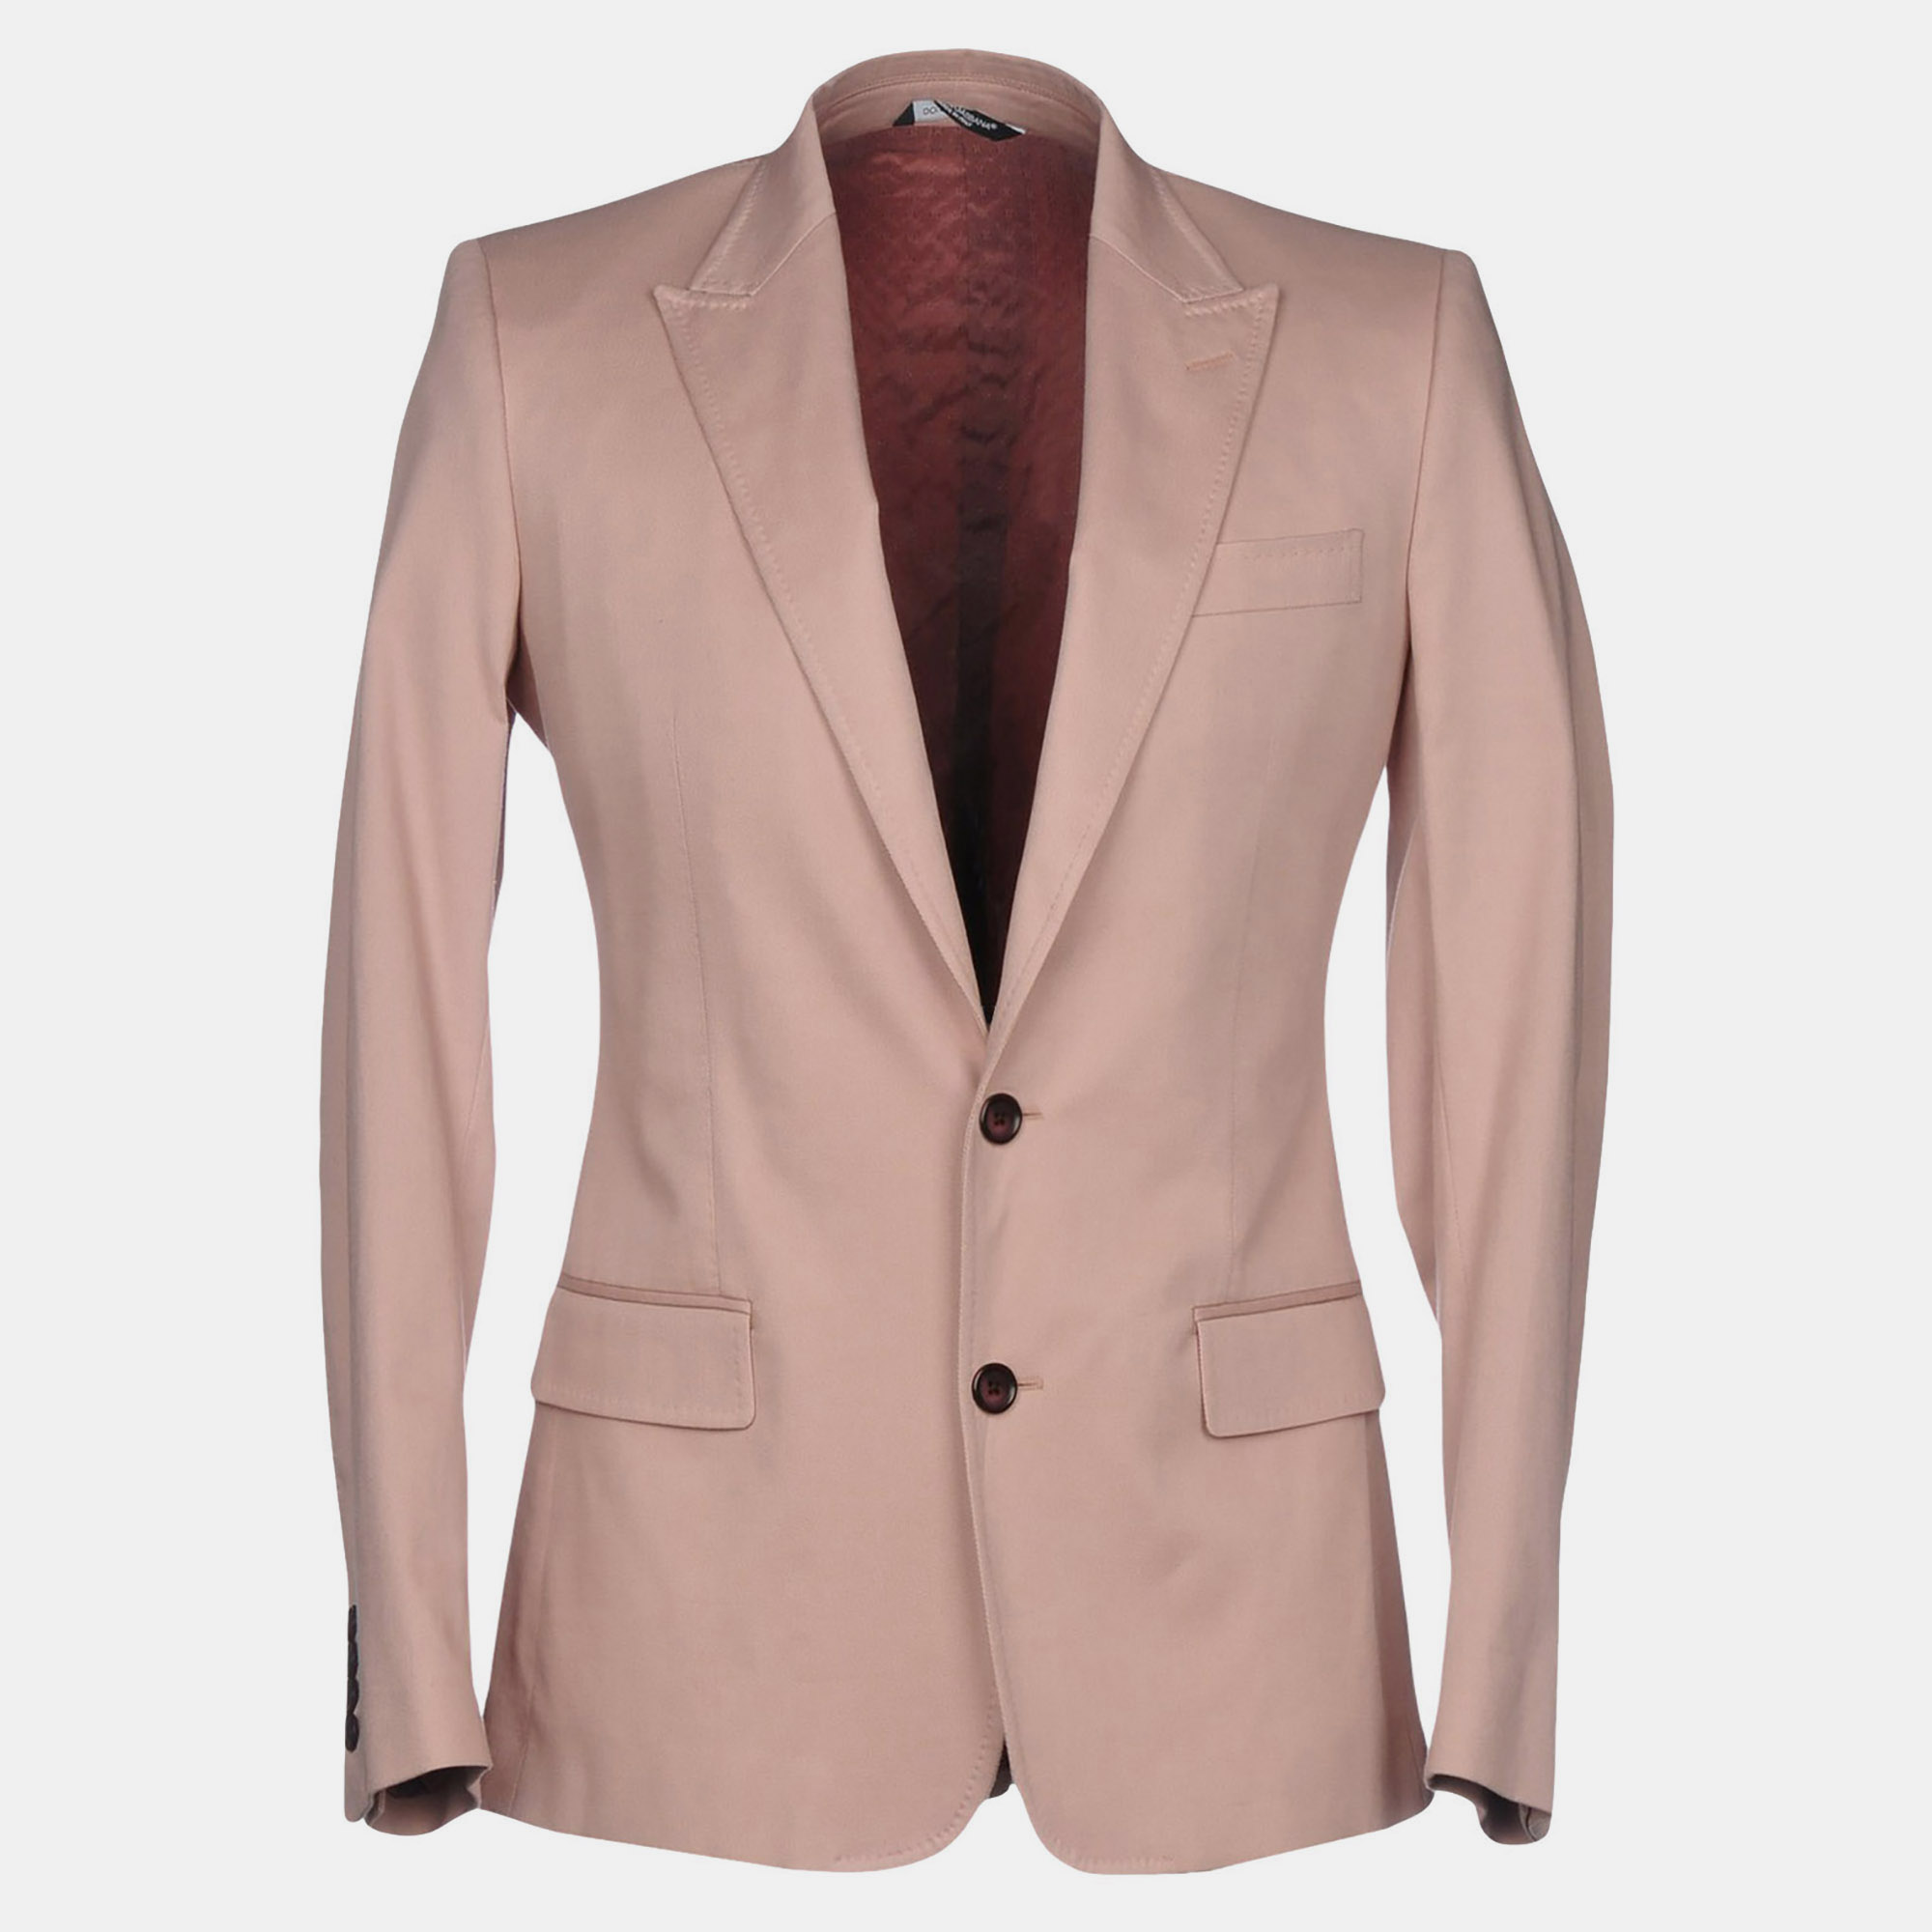 Dolce & gabbana pink cotton tailored blazer s (it 46)